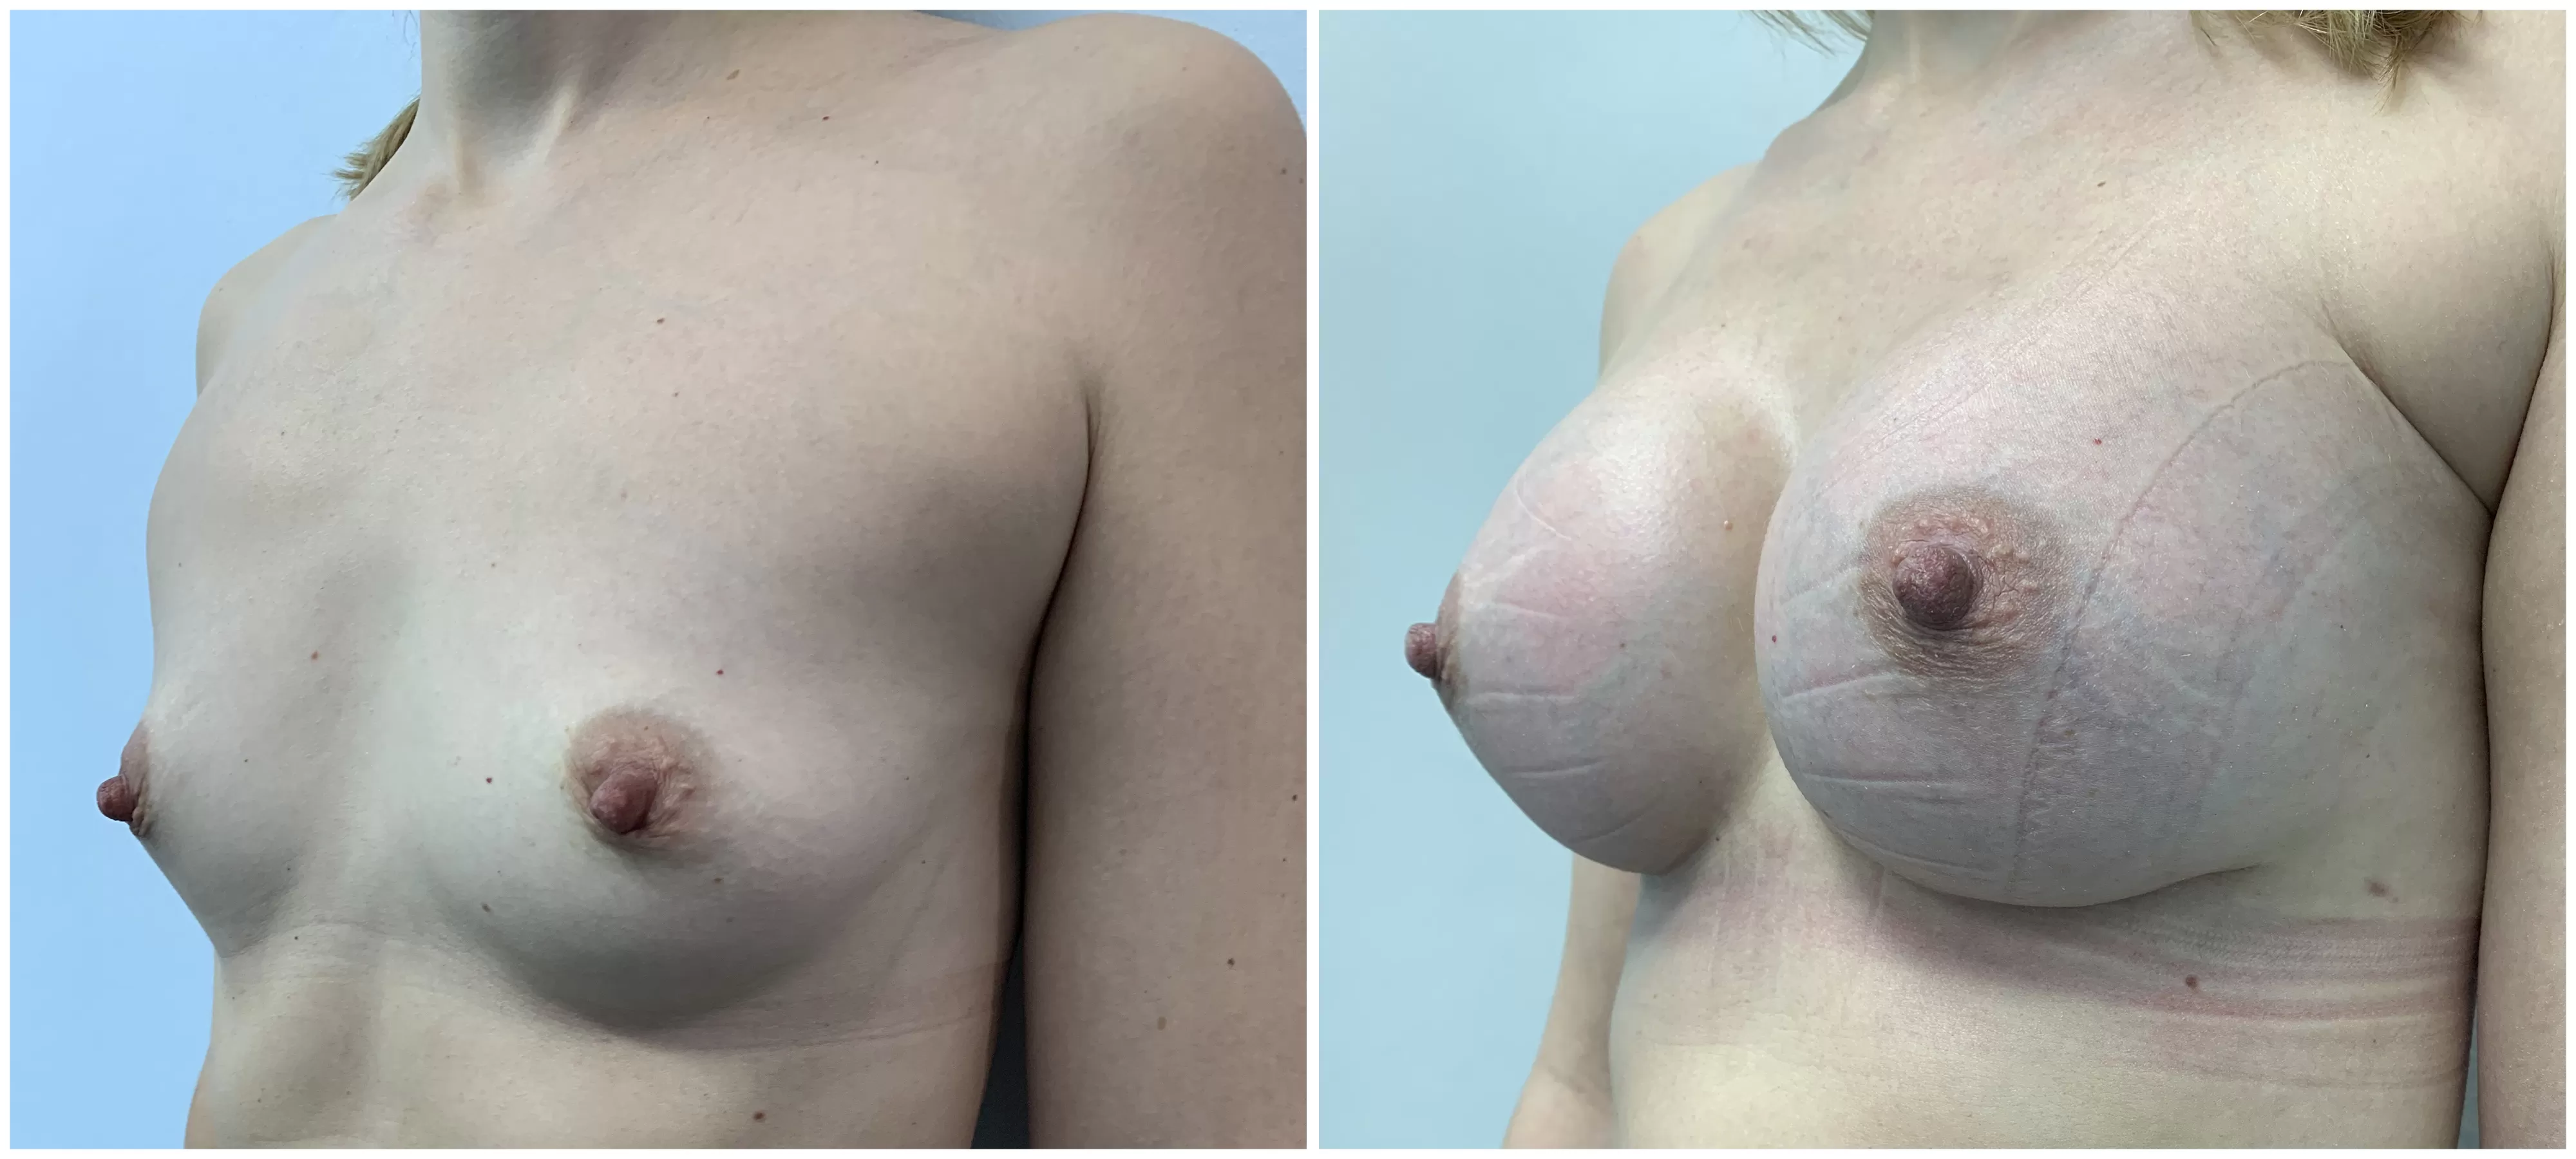 Трансакциллярное увеличение груди имплантами. 6 месяцев после операции. Хирург:  Коваль Сергей Николаевич